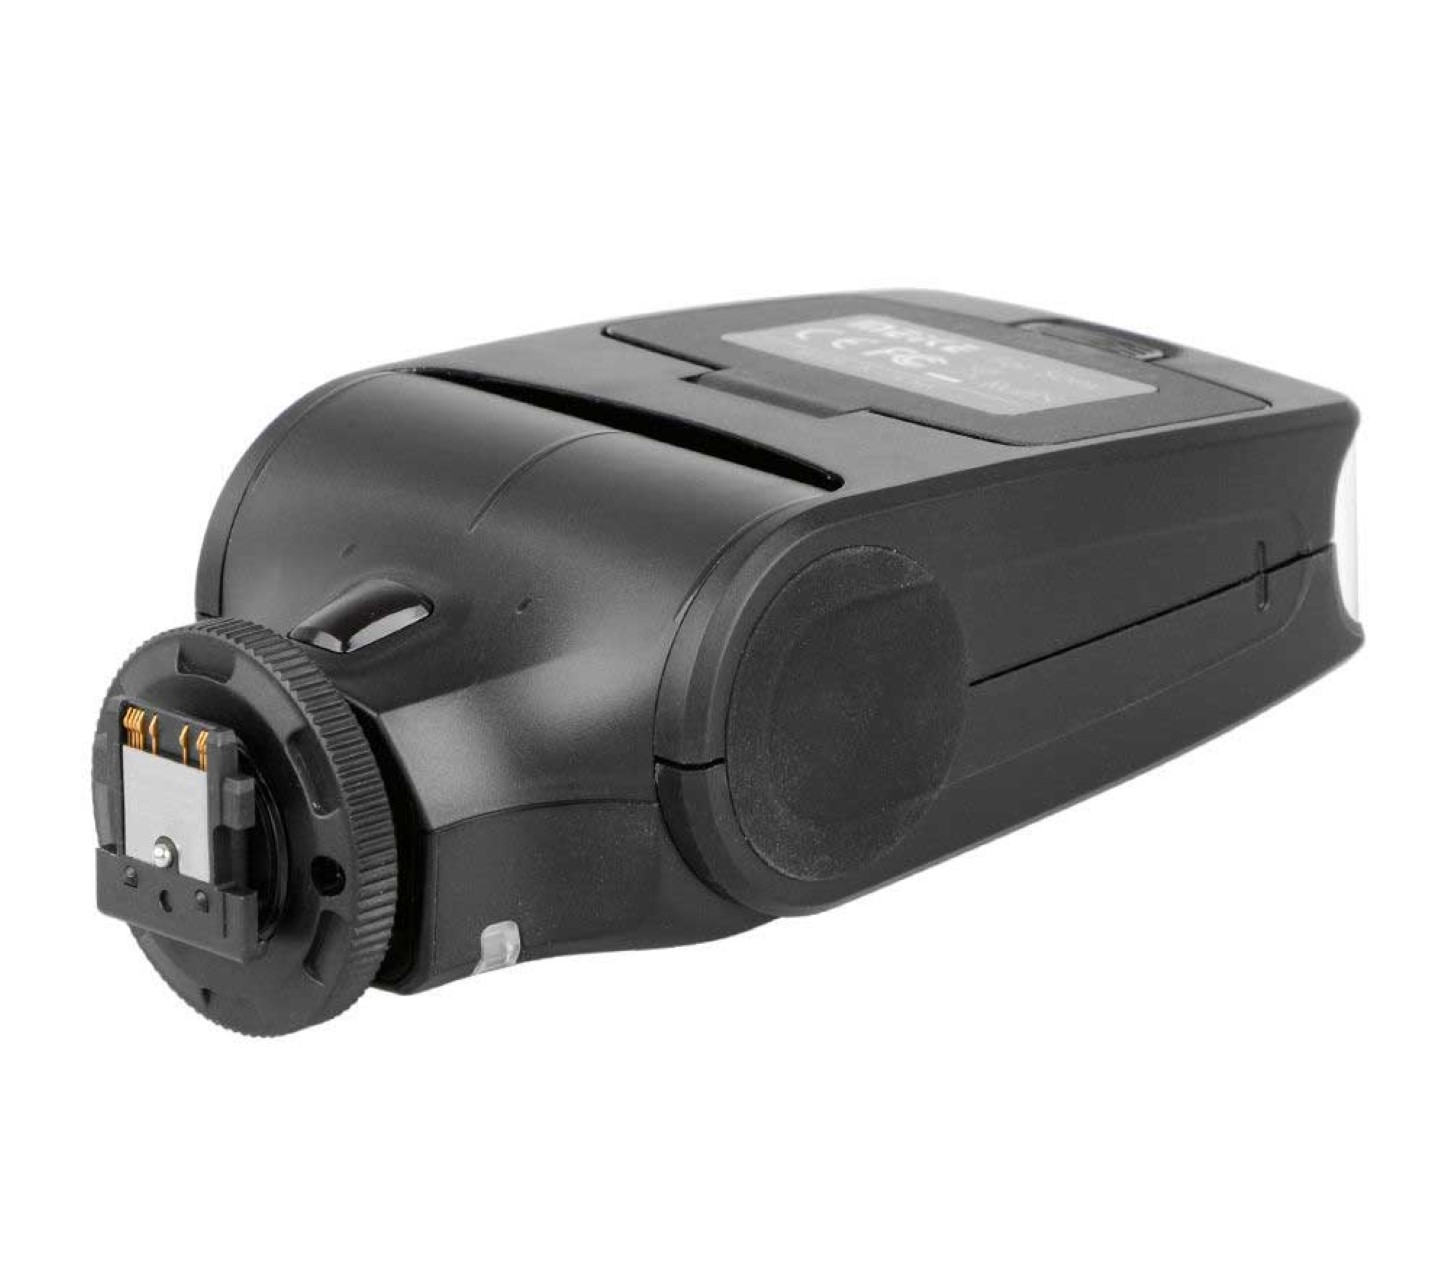 Meike Speedlite MK-320 TTL Blitz für Sony Kameras mit Multi Interface Shoe